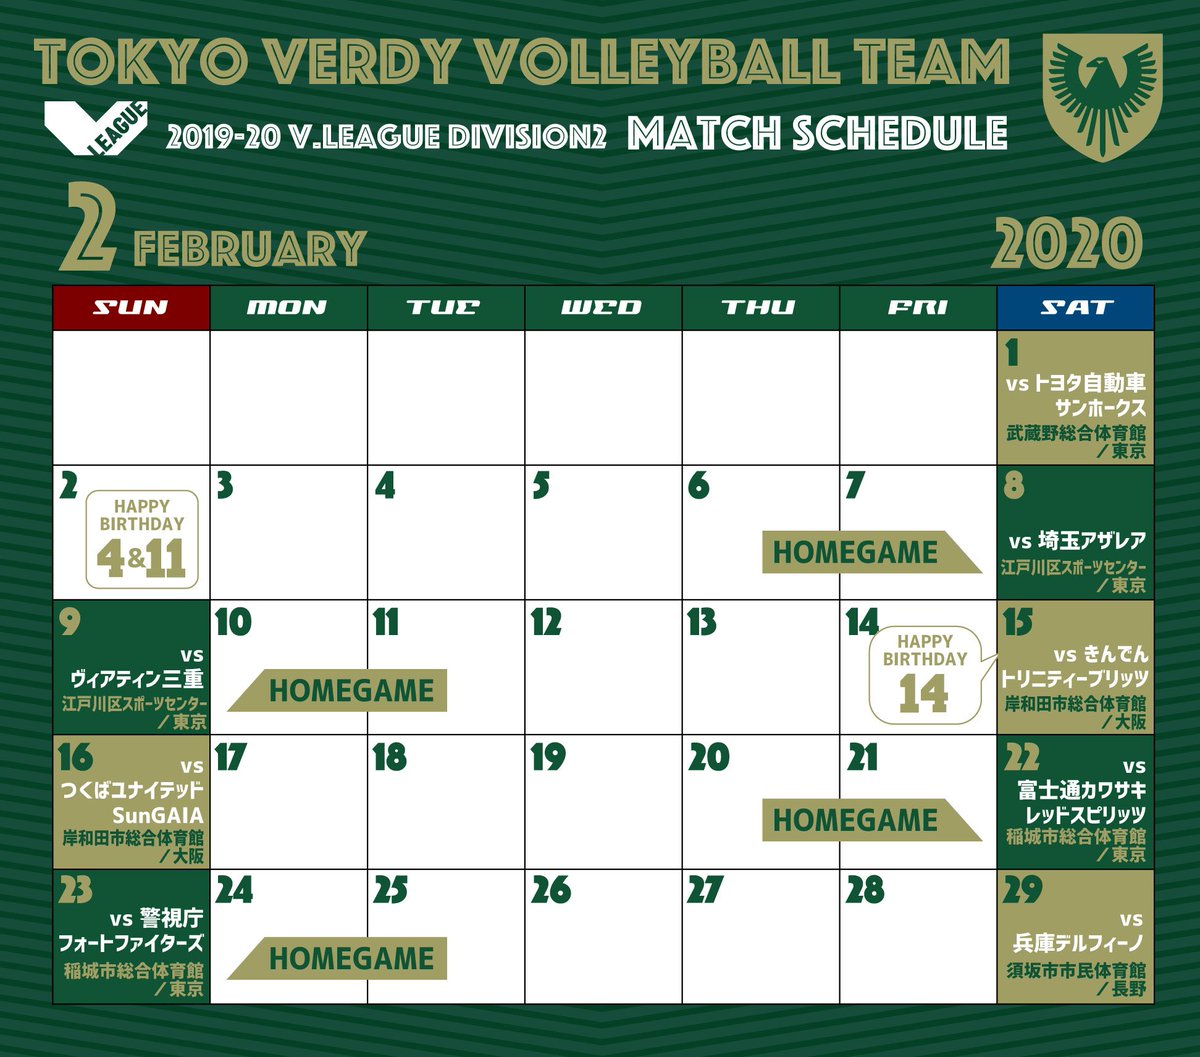 ヴェルディバレー応援アカウント 2月の試合日程 今月は江戸川 稲城でのホームゲームをはじめ 多くの試合があります ぜひ会場に足を運んで 応援をお願いします 東京ヴェルディ Verdy Verdyfamily Vリーグ Vリーグはバレーだよ バレーボール